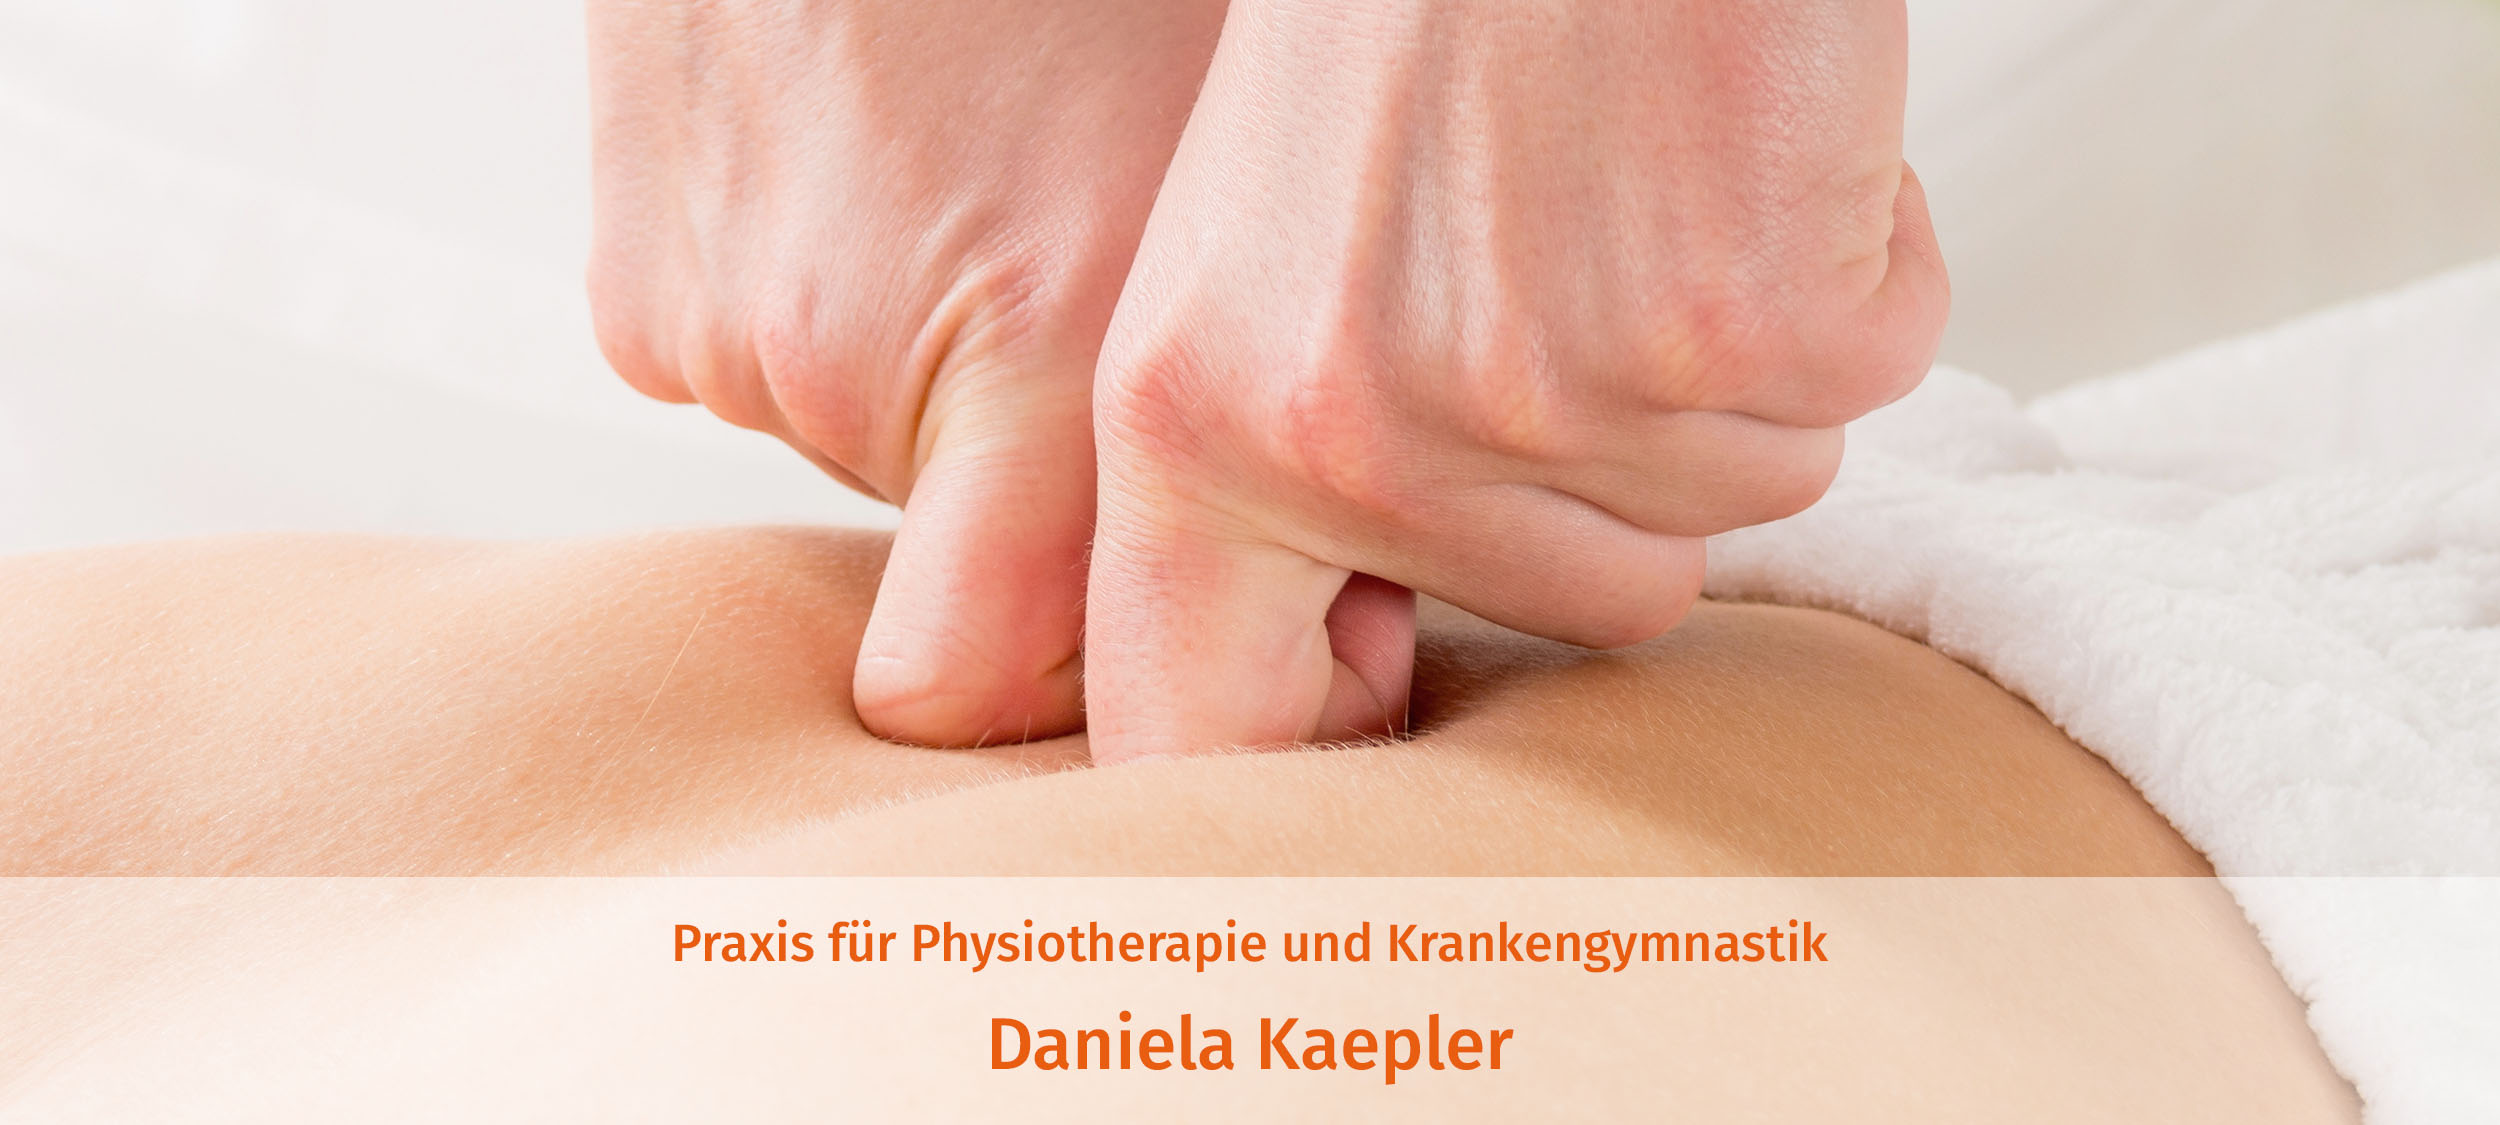 Praxis für Physiotherapie und Krankengymnastik Daniela Kaepler | Header 1